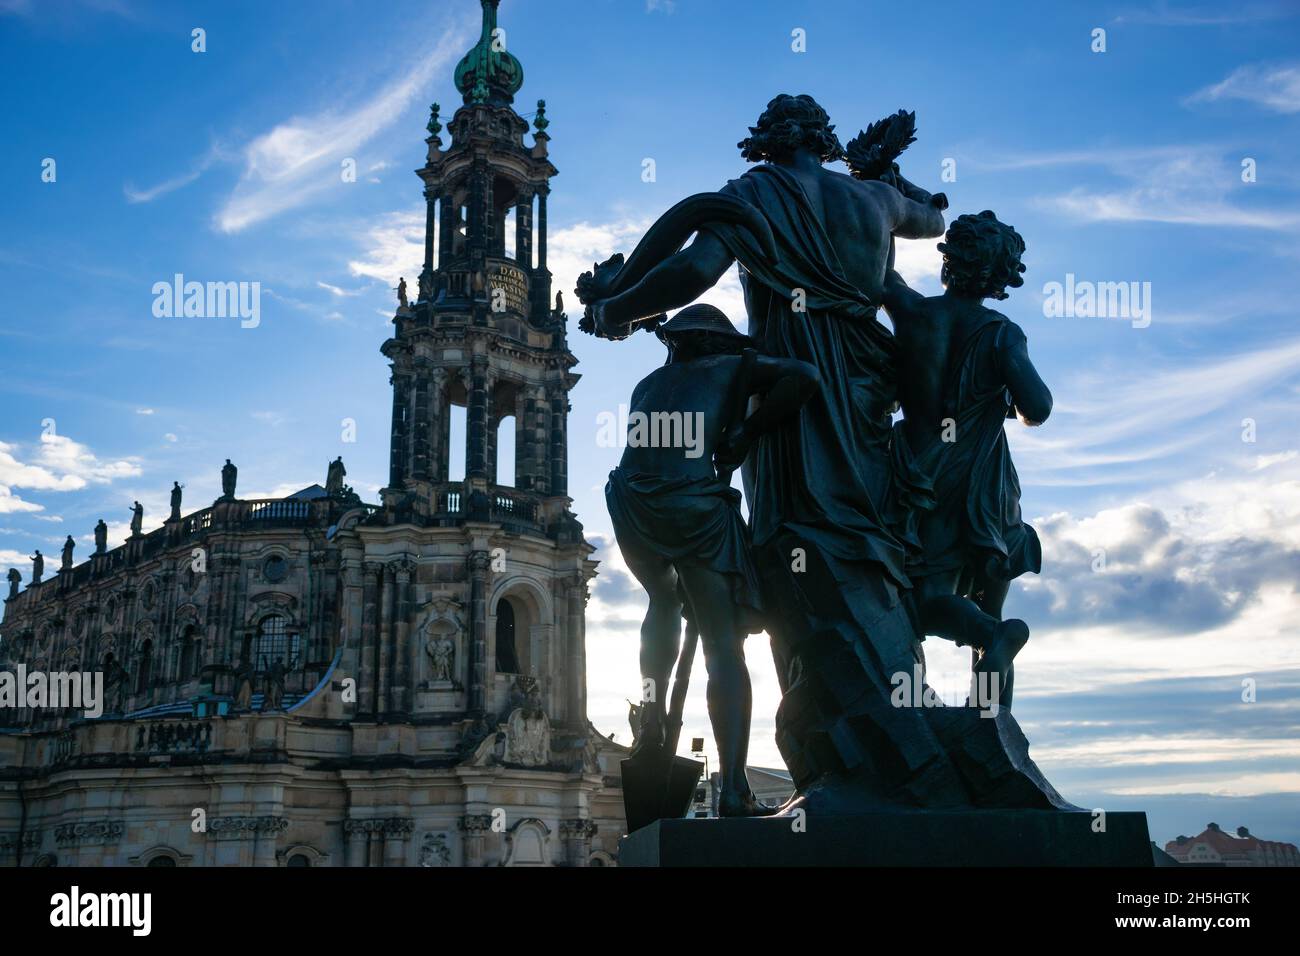 20 mai 2019 Dresde, Allemagne - église Hofkirche et sculpture « Der Morgen » au coucher du soleil Banque D'Images